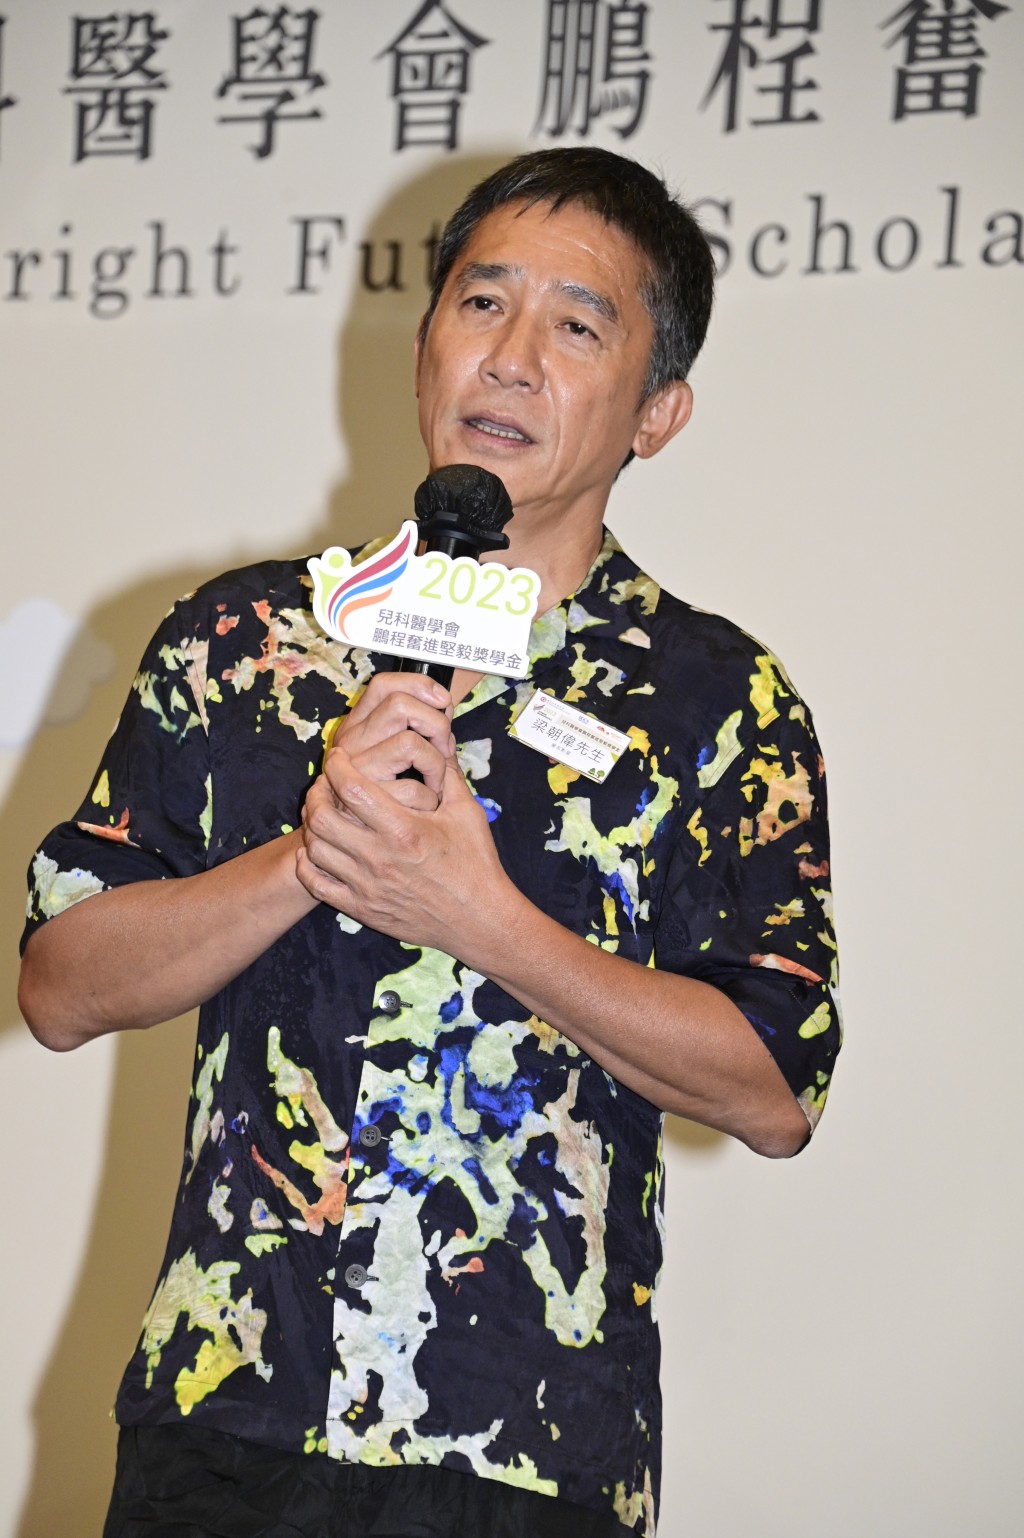 梁朝伟在活动上表示自己来自基层家庭。